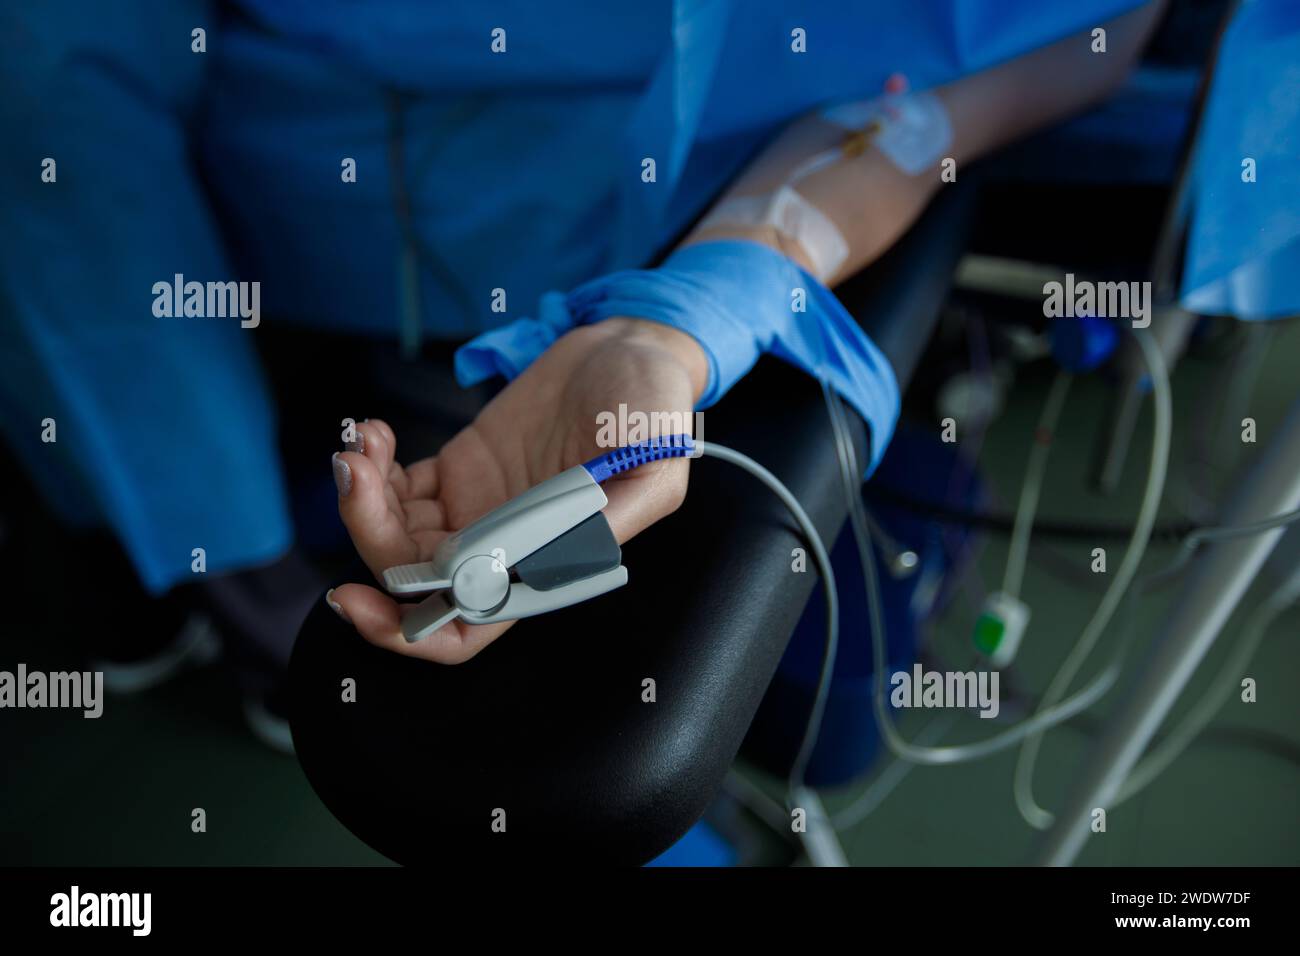 Misurazione della saturazione di ossigeno nel sangue durante l'intervento chirurgico. Foto di alta qualità Foto Stock